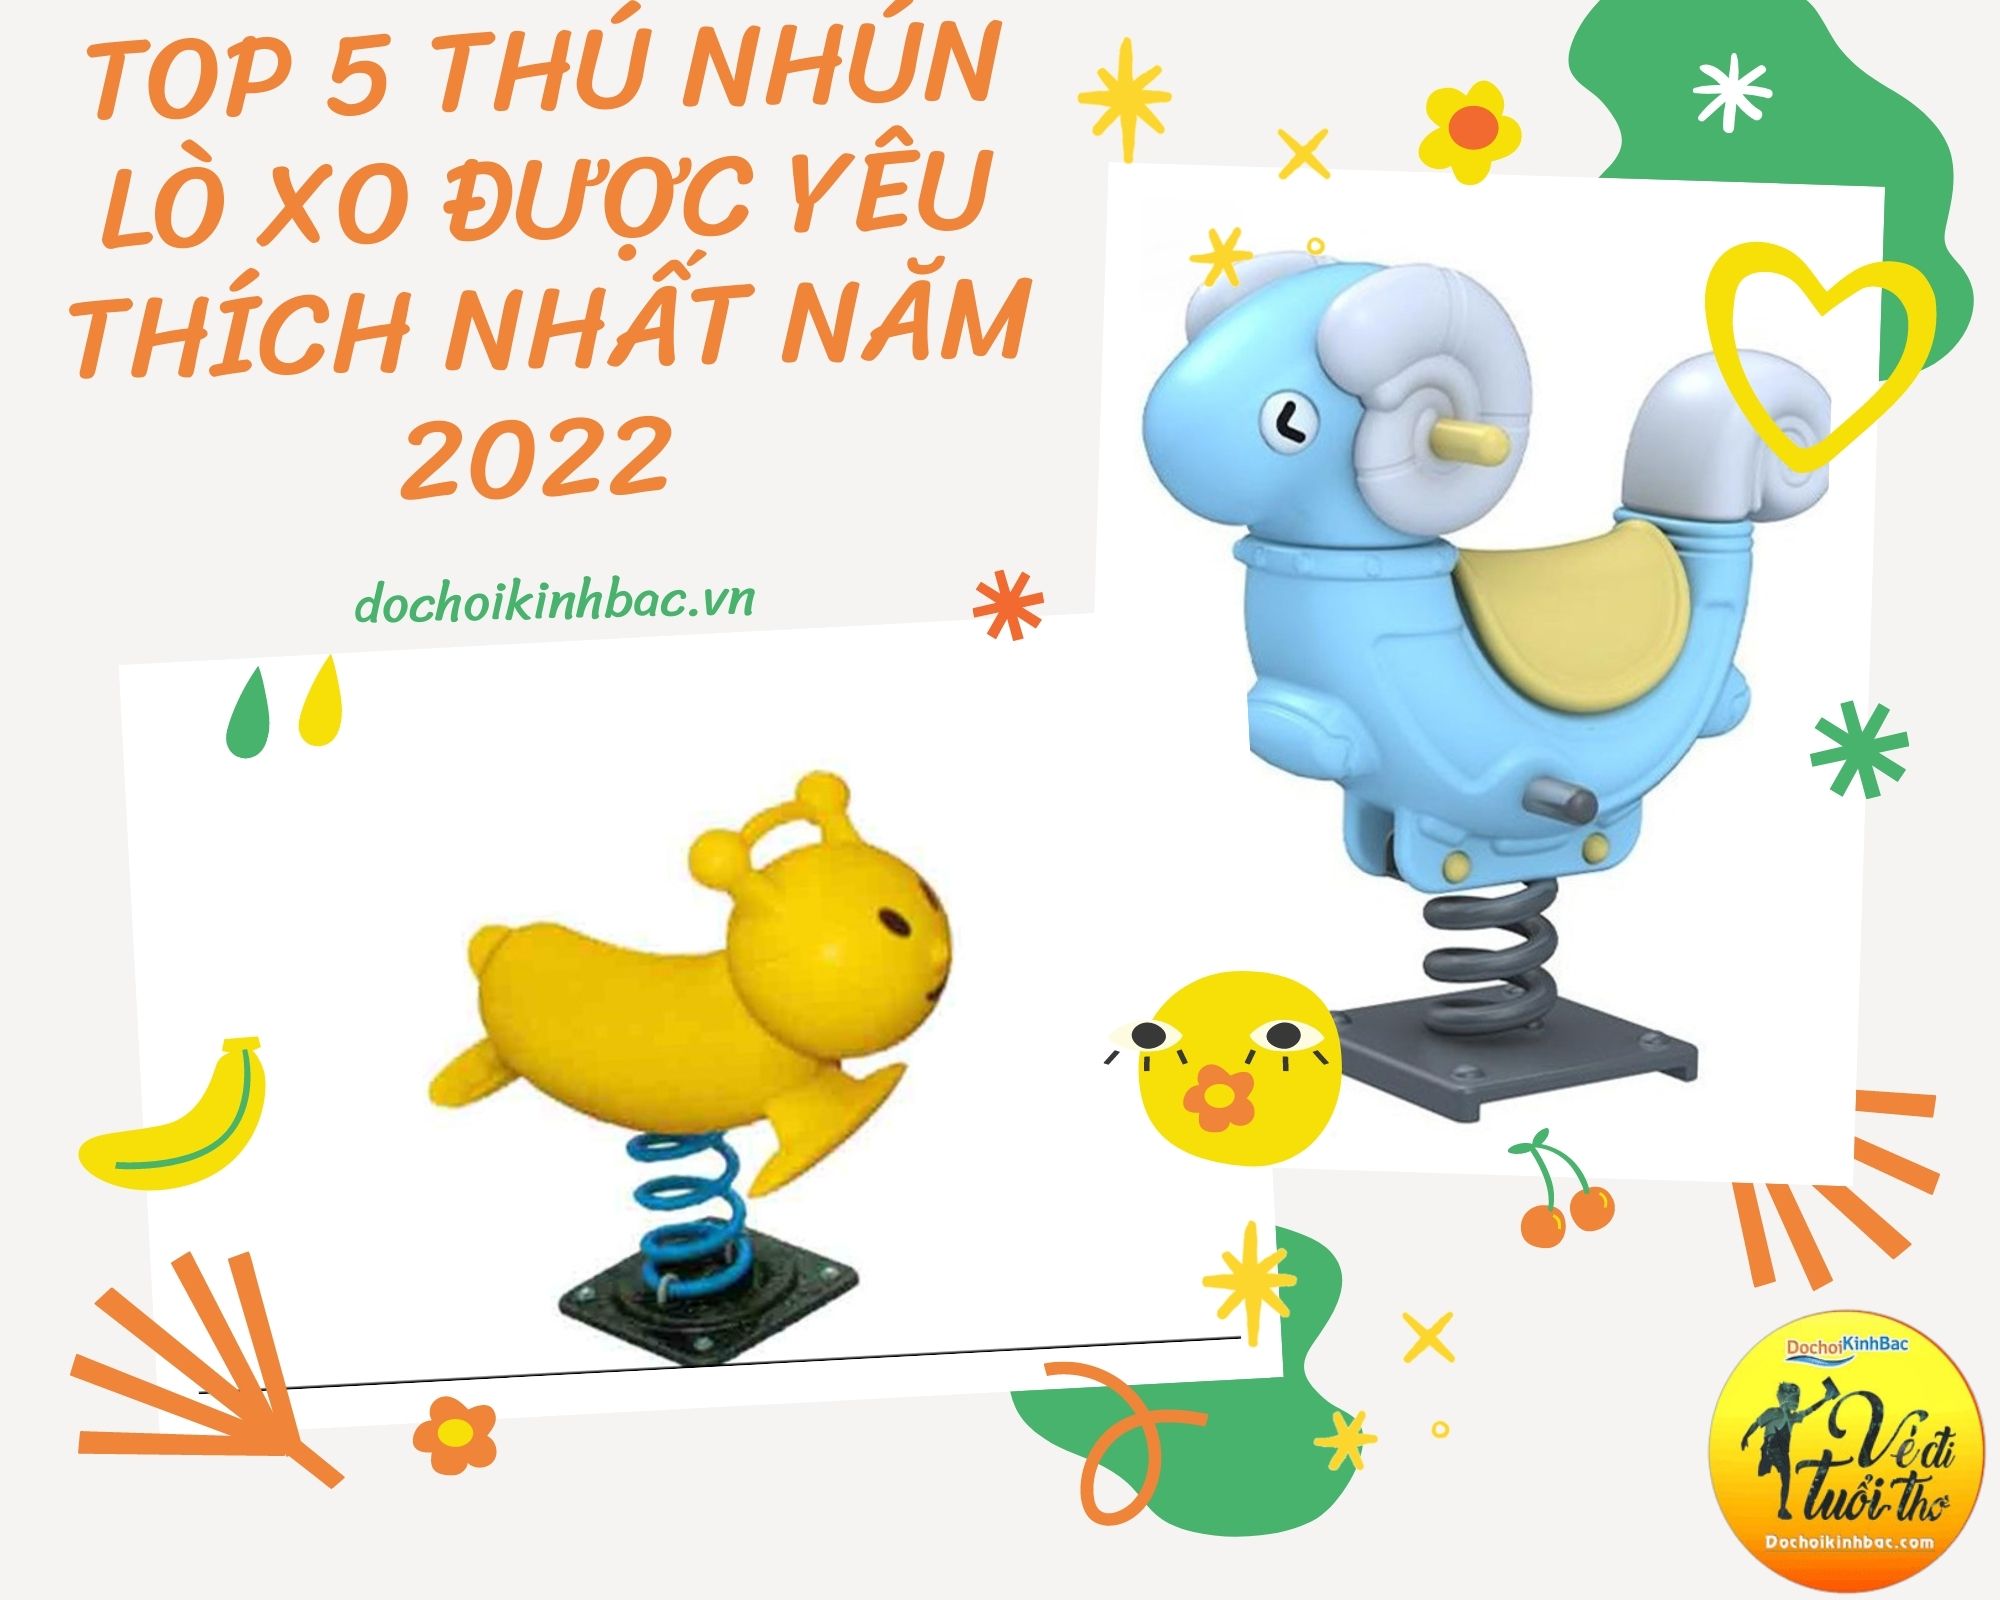 Top 5 Thú nhún lò xo được yêu thích nhất năm 2022 tại Bản Qua, Bát Xát, Lào Cai